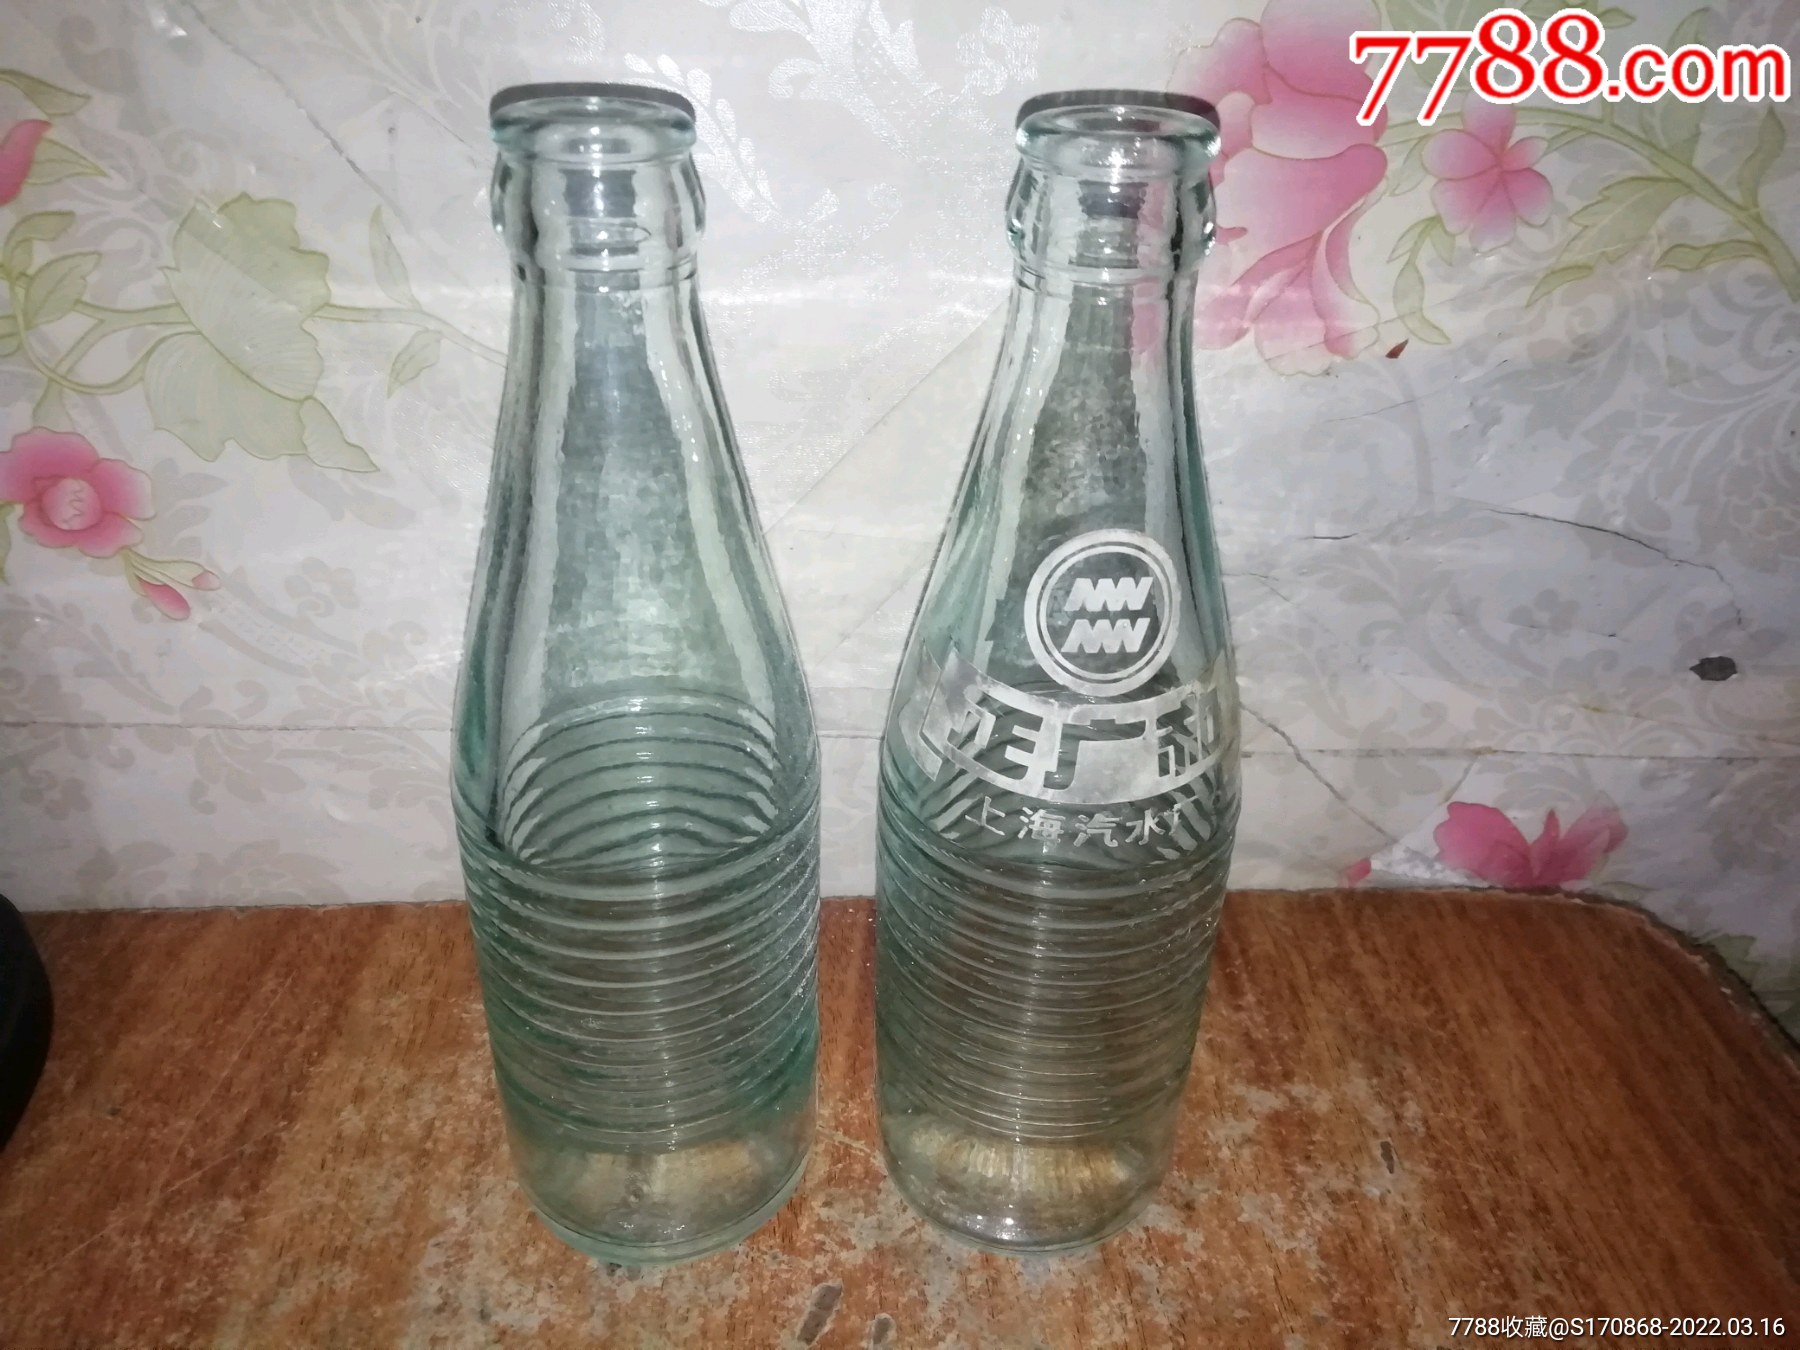 正广和:上海汽水厂:瓶:两瓶合拍-价格:107元-au29525958-饮料瓶-加价